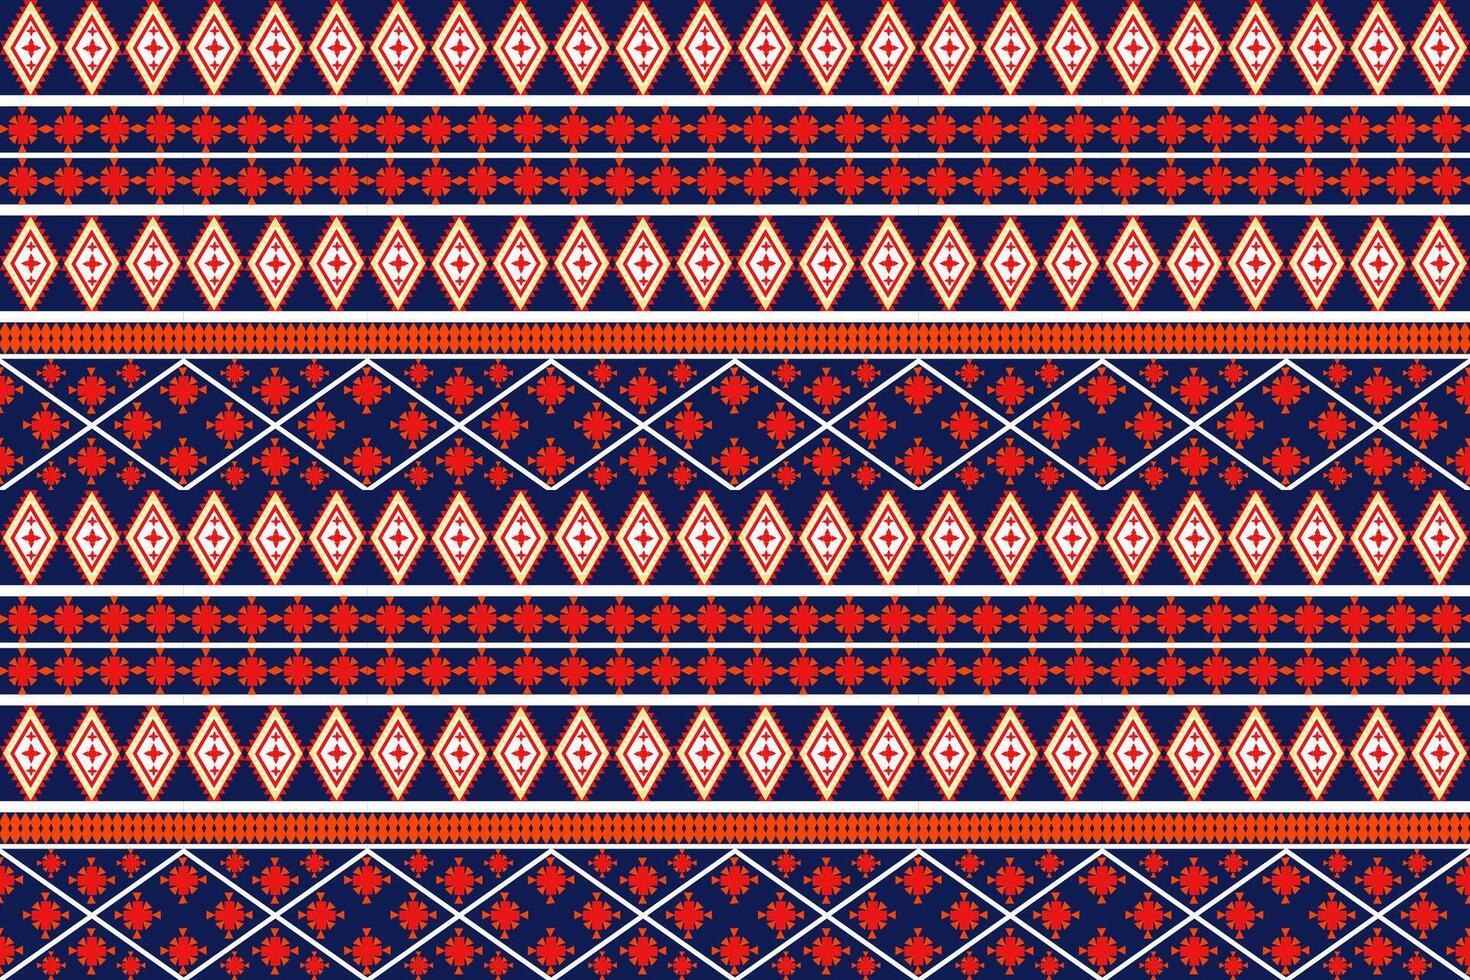 aztekisch Stammes- geometrisch Vektor Hintergrund im schwarz rot Gelb Weiß nahtlos Streifen Muster. traditionell Ornament ethnisch Stil. Design zum Textil, Stoff, Kleidung, Vorhang, Teppich, Ornament, Verpackung.